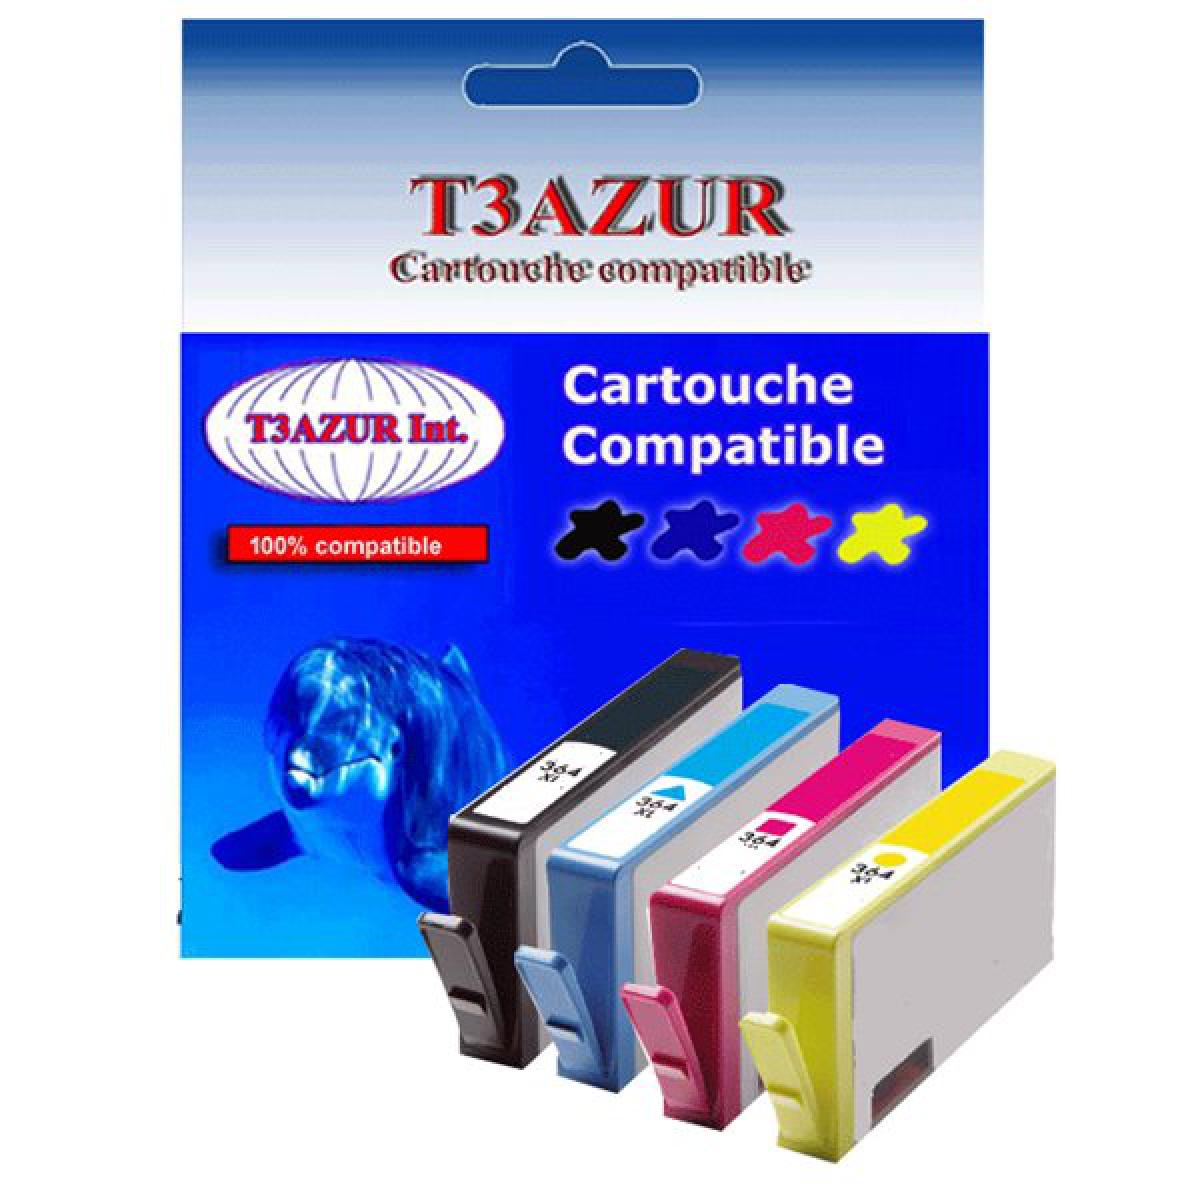 T3Azur - Lot de 4 Cartouches compatibles pour imprimante HP Photosmart B110, B110a, B110a/c/e, B110c, B110, B110d, B110 (1Bk+1C+1M+1J)- T3AZUR - Cartouche d'encre